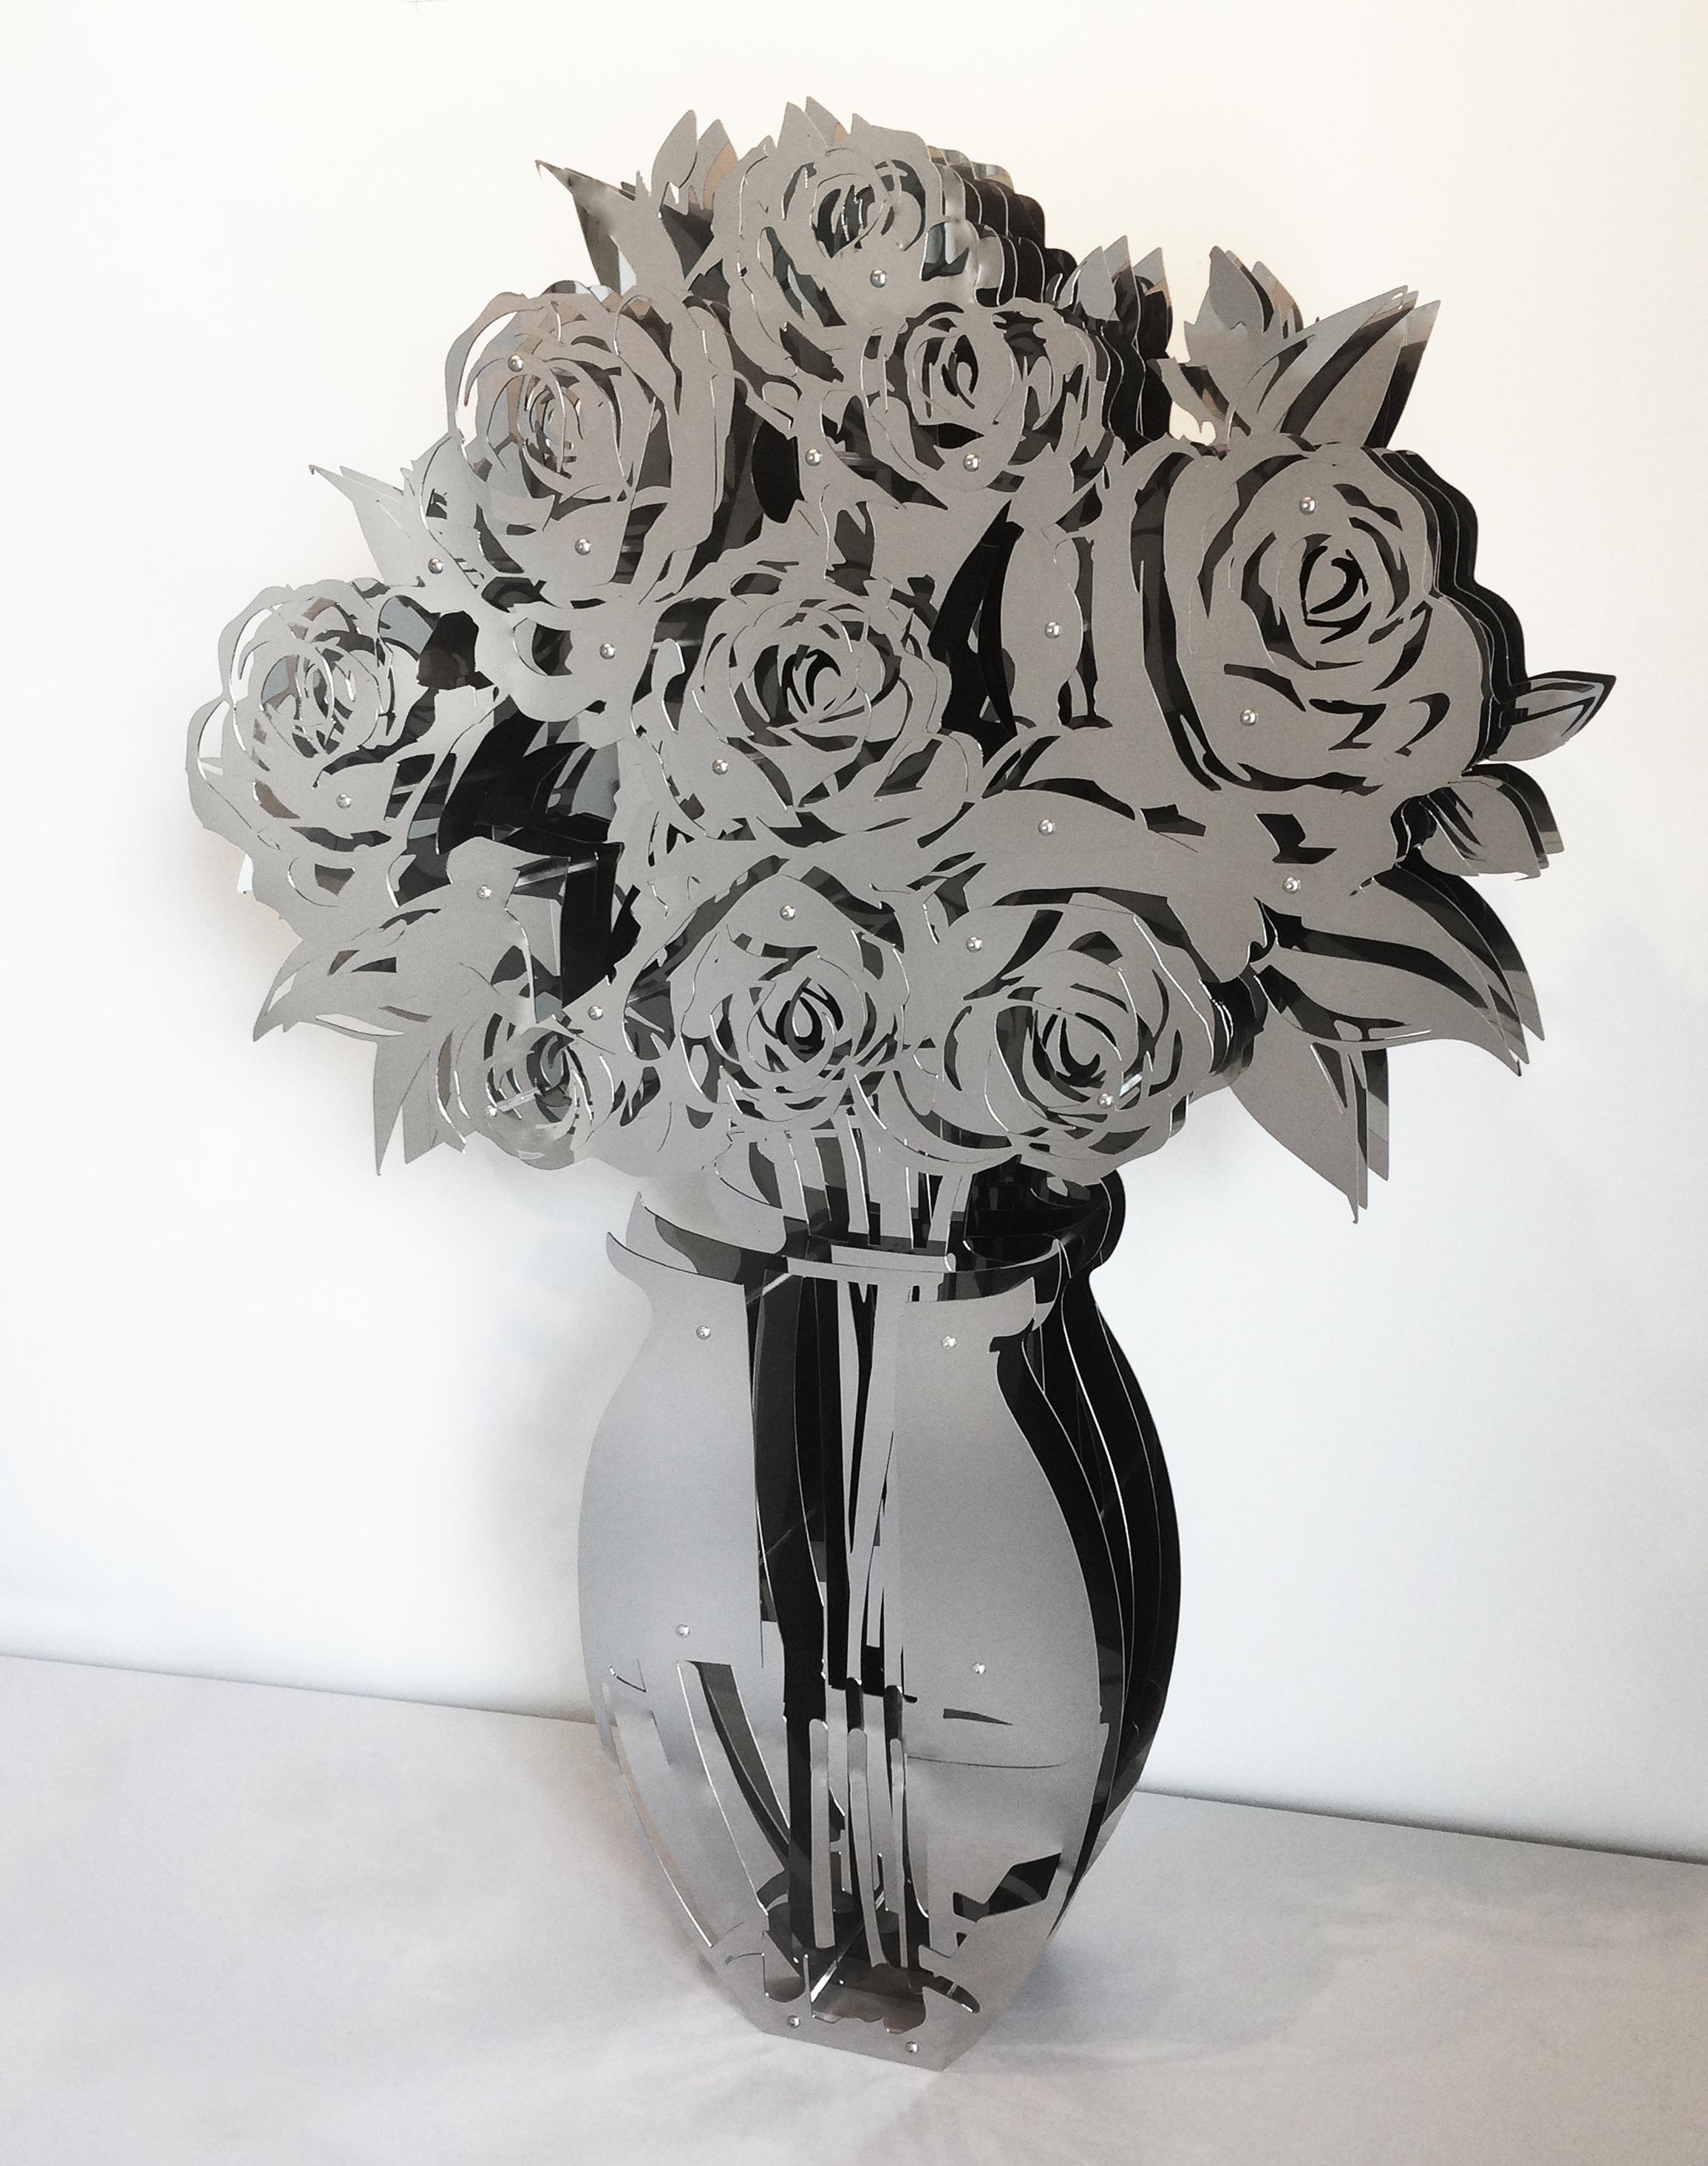 Michael Kalish Abstract Sculpture – Vase mit Rosen – verspiegelt, Edelstahl 60